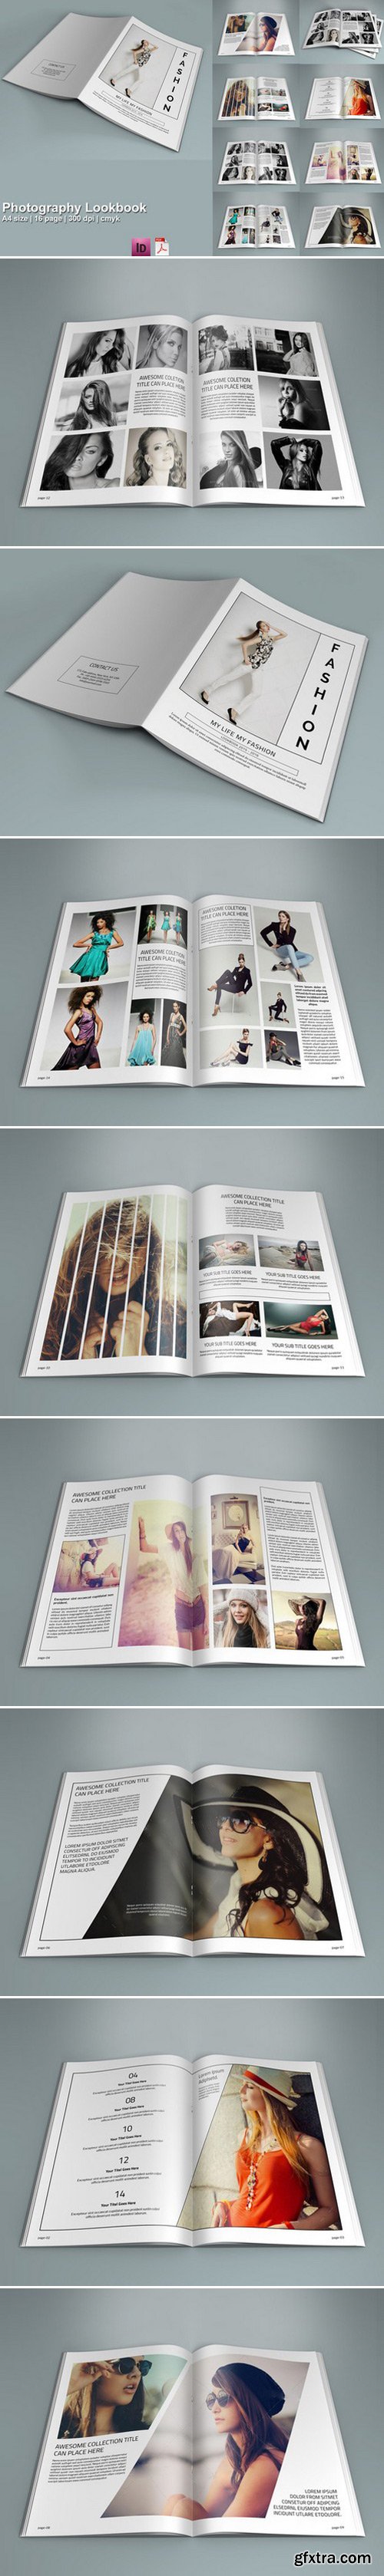 CM - InDesign: Photography Lookbook- V208 406439